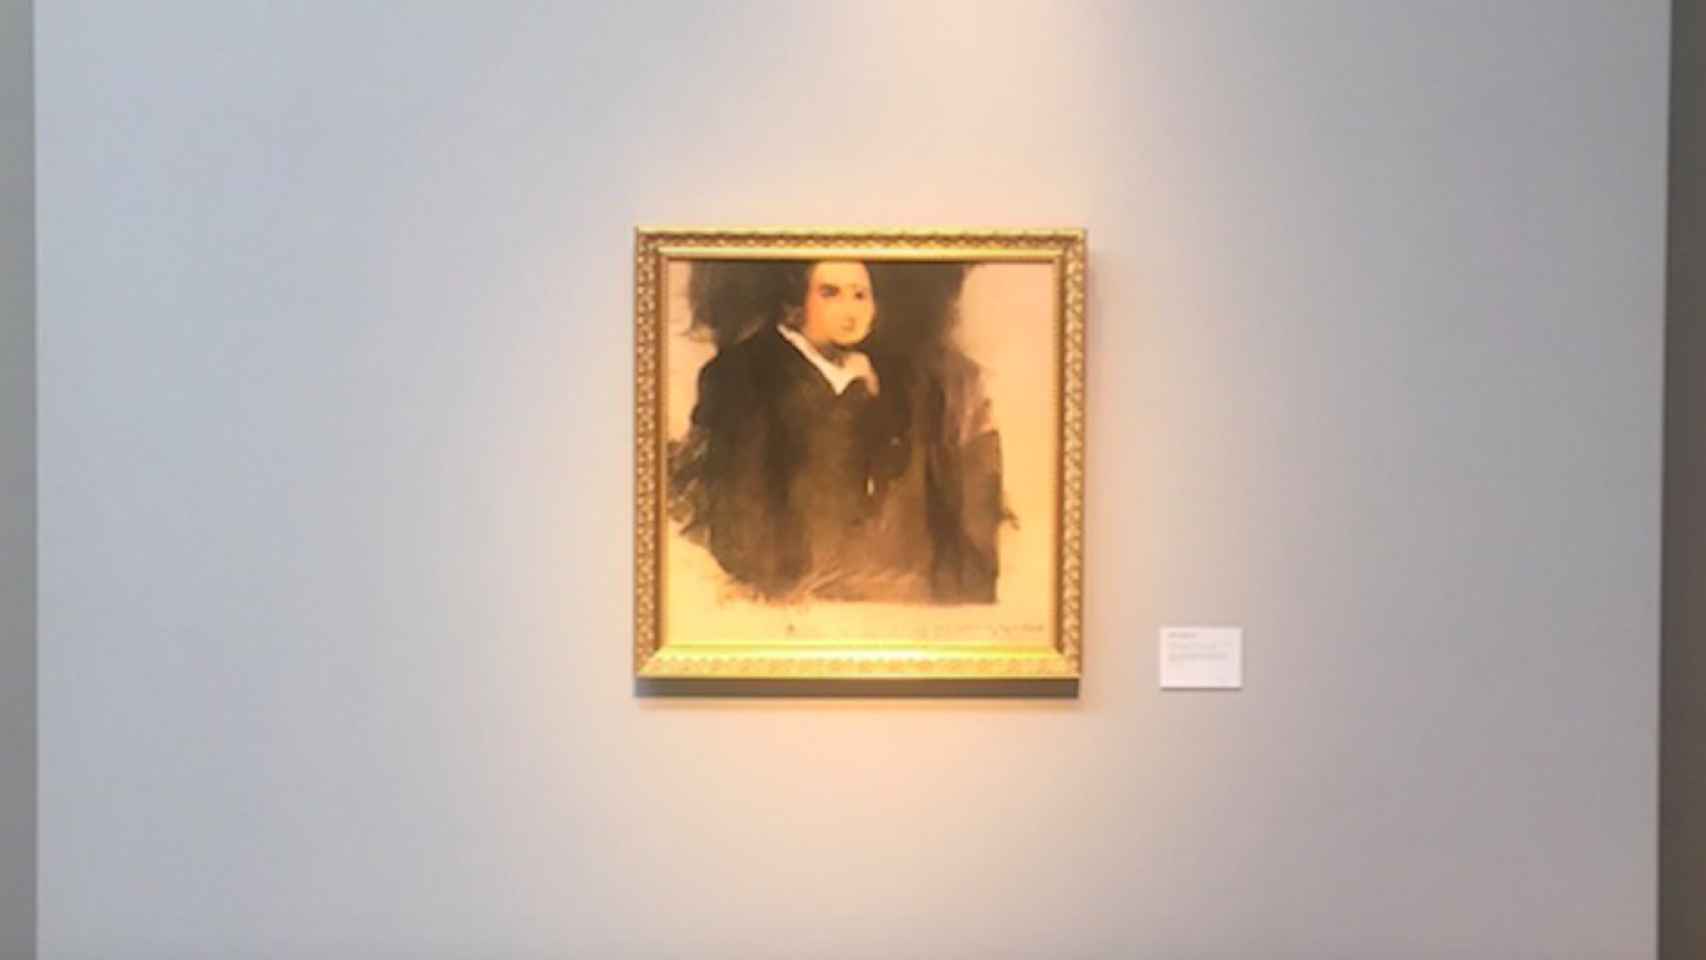 'El Retrato de Edmond de Belamy', el cuadro creado mediante un algoritmo / OBVIOUS ART